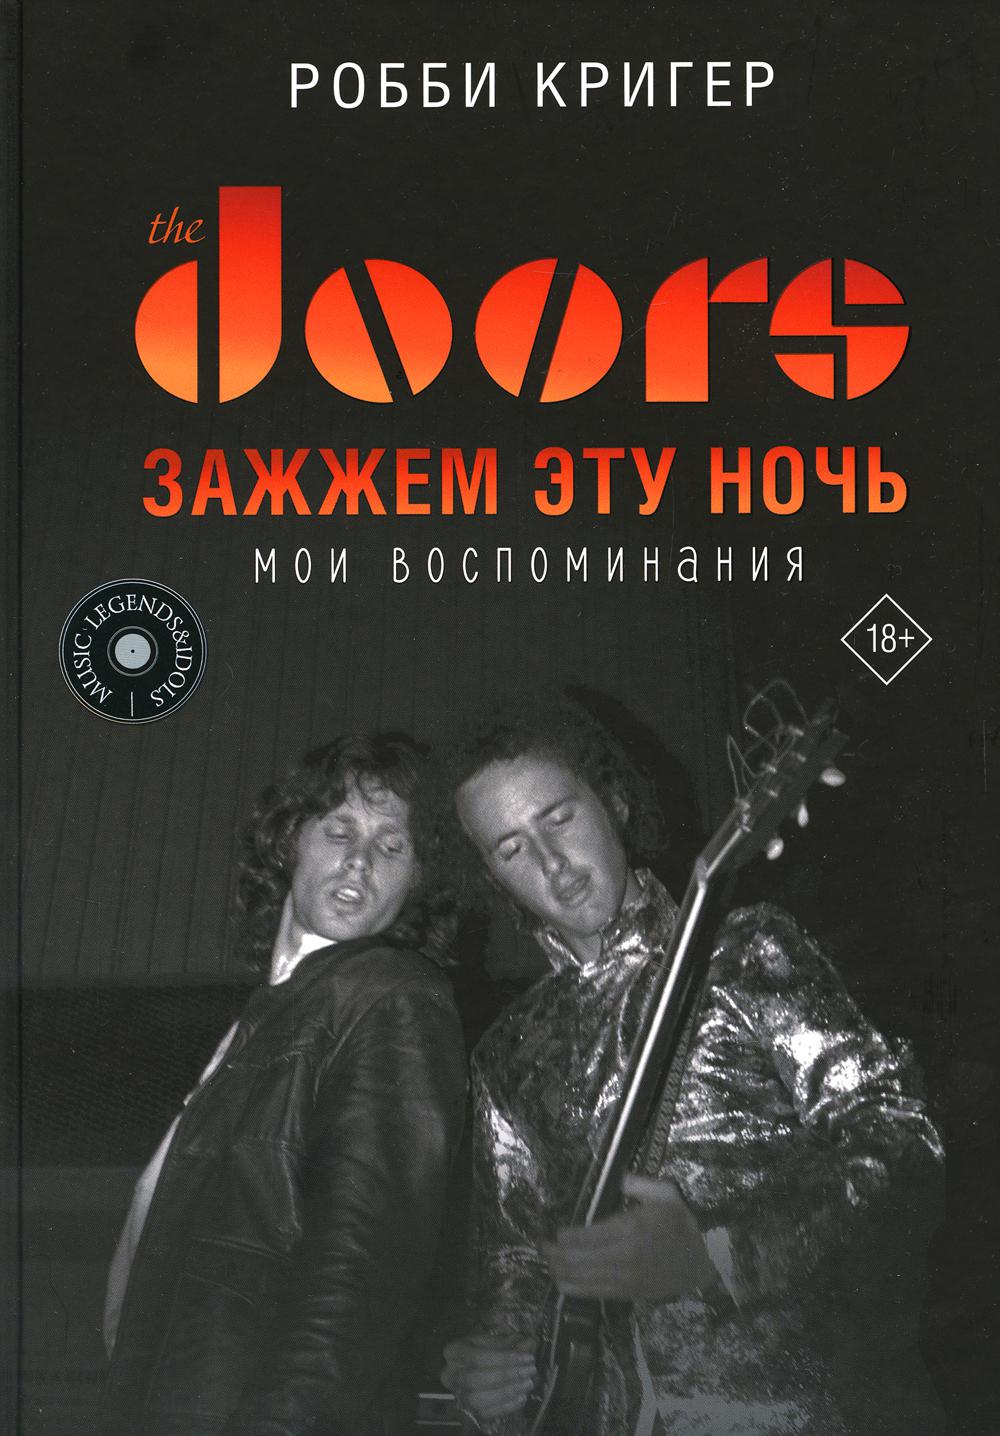 The Doors.   .  